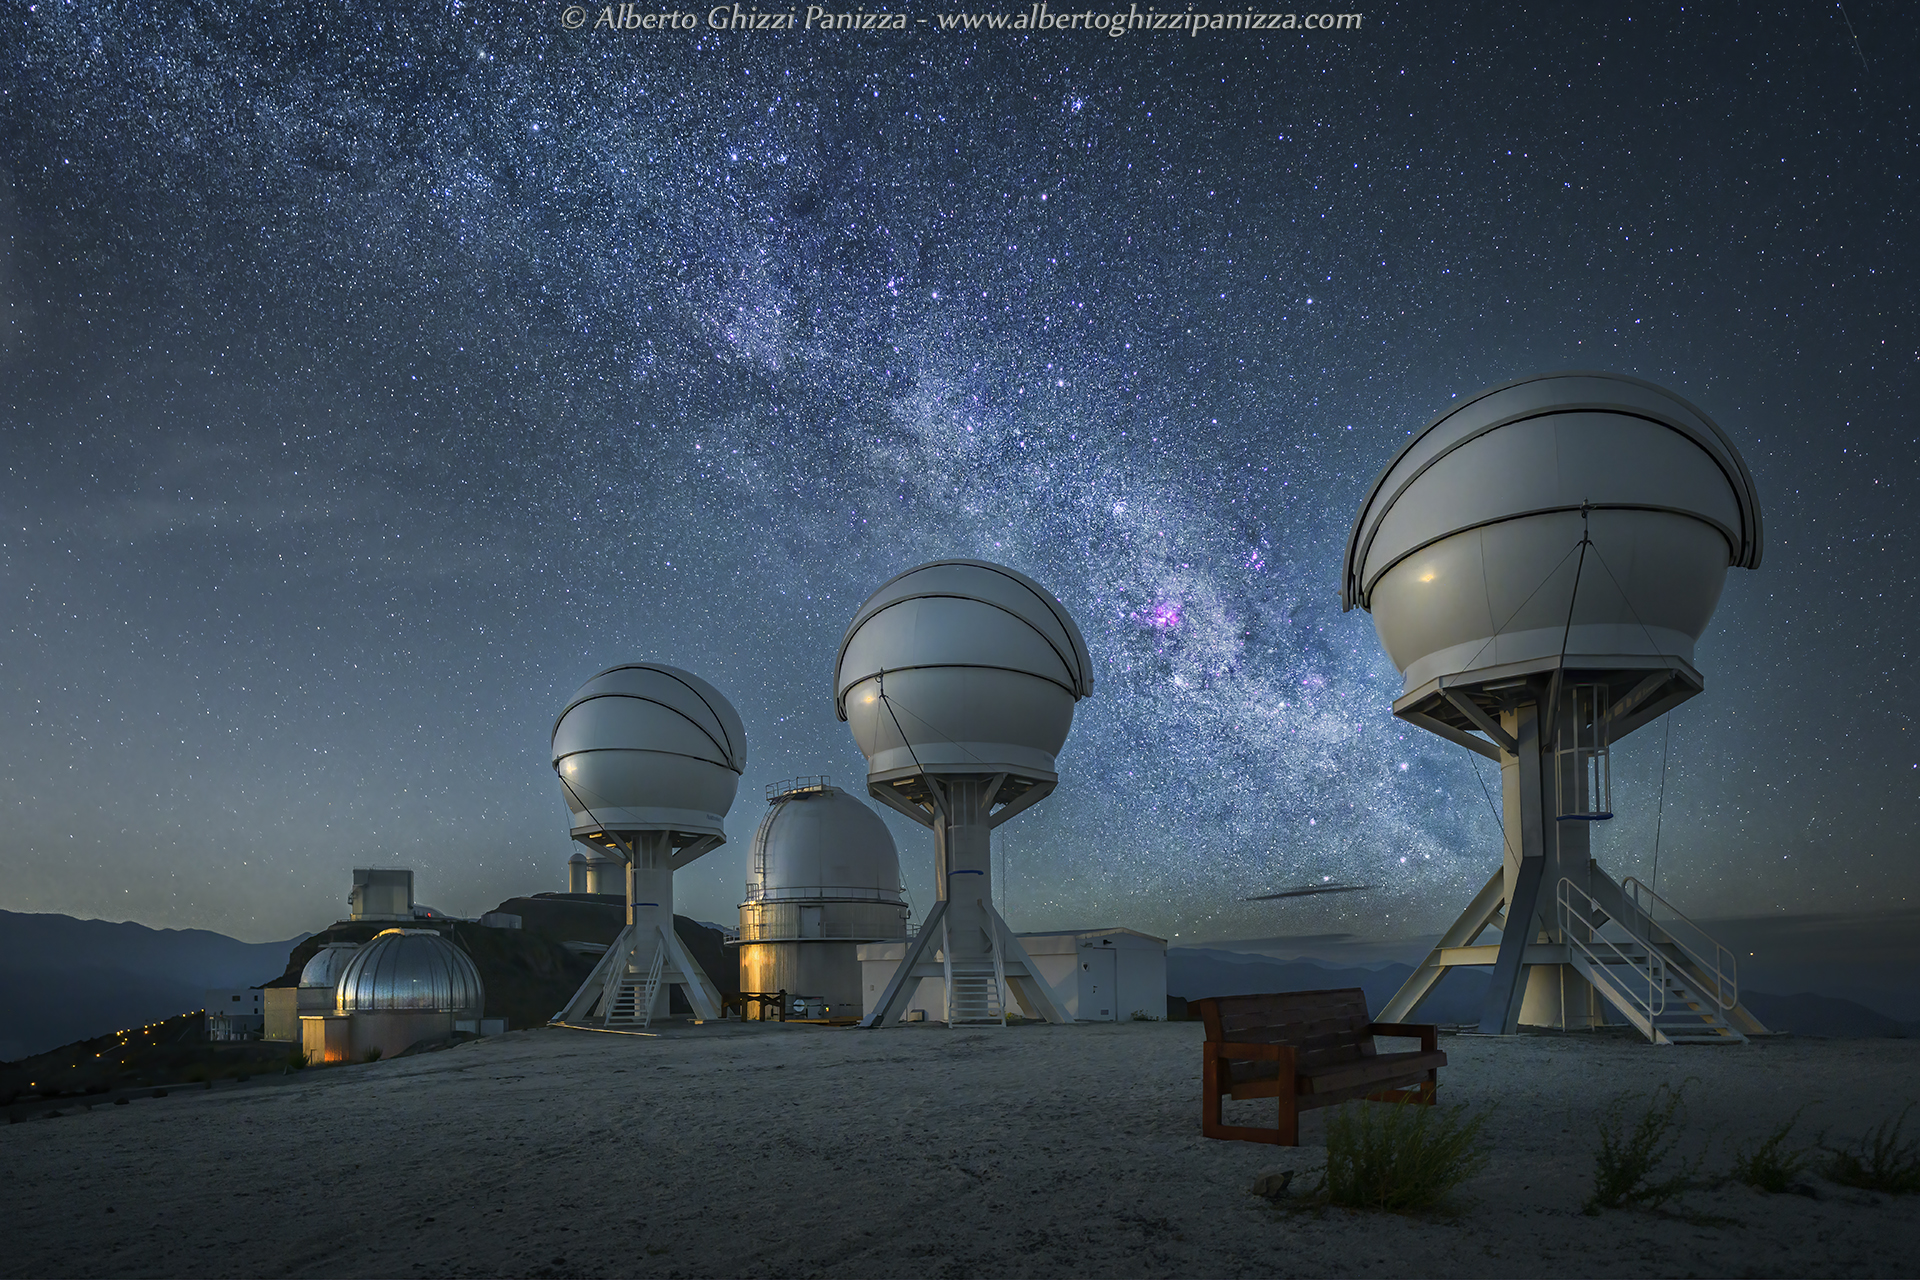 ESO La Silla Observatory in the Splendor of Night...